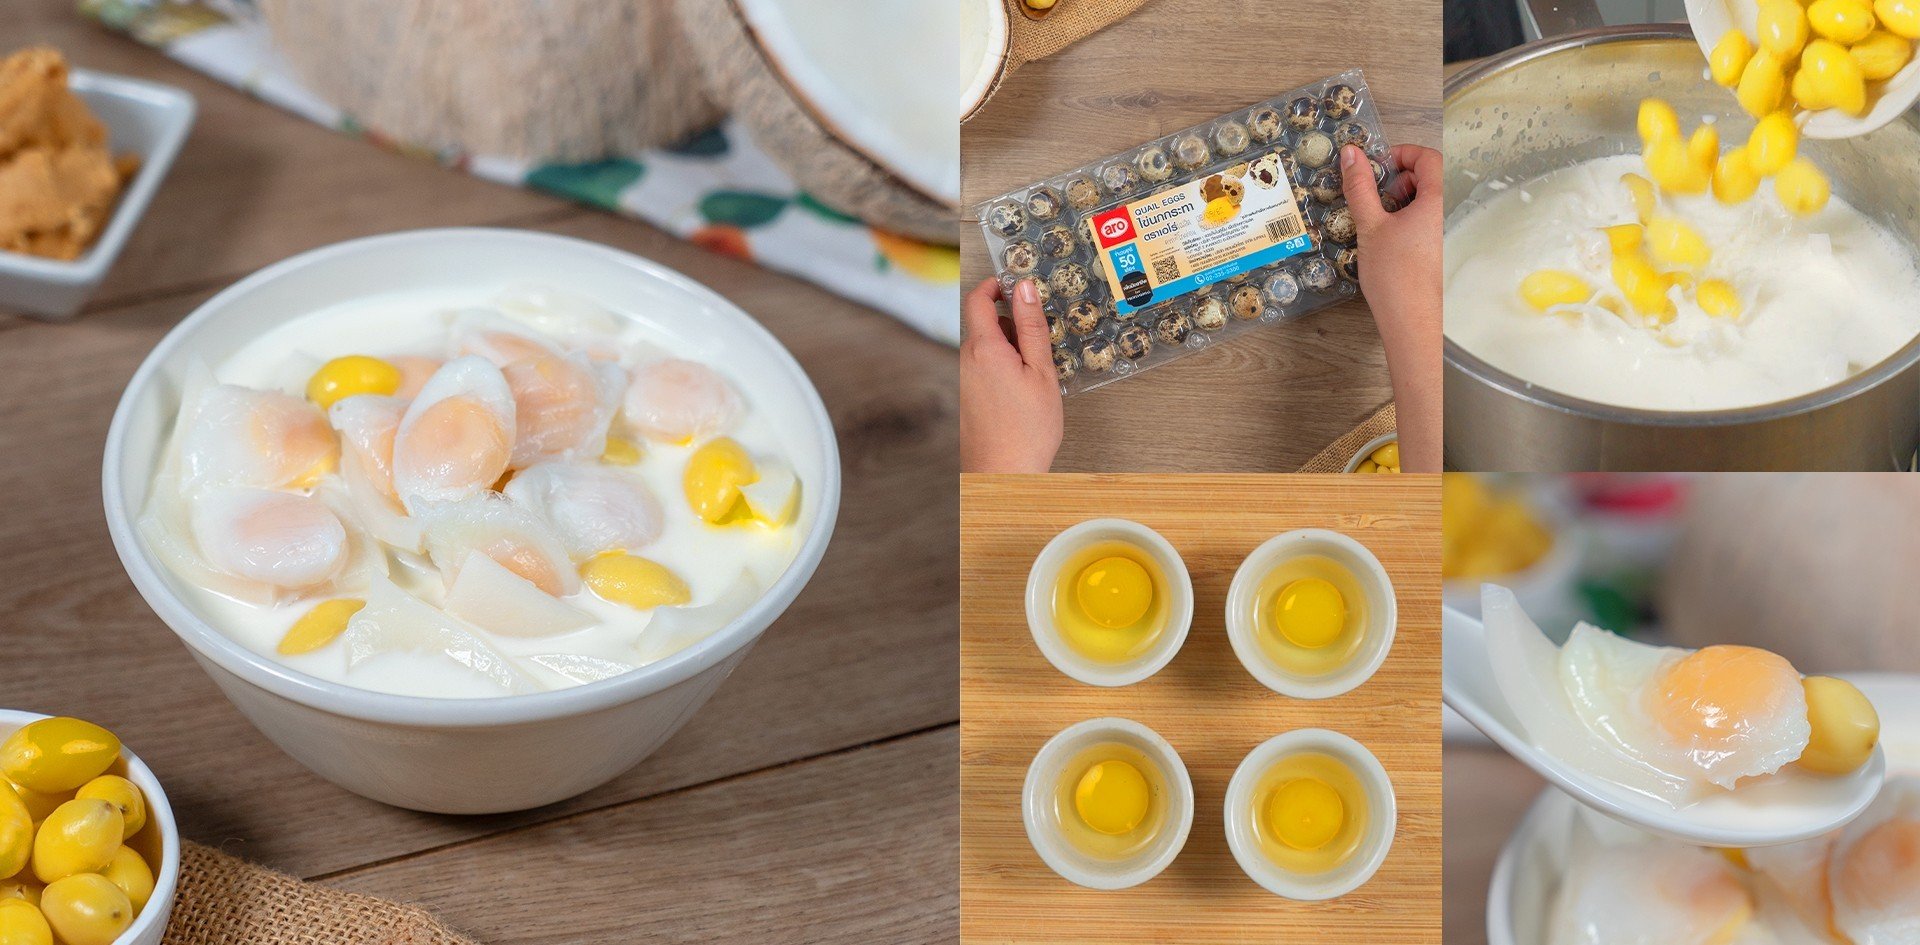 วิธีทำ “ไข่นกกระทาหวาน” เมนูของหวานเคี้ยวเพลิน จนอยากเชิญมาลองชิม เมนูอาหารว่าง